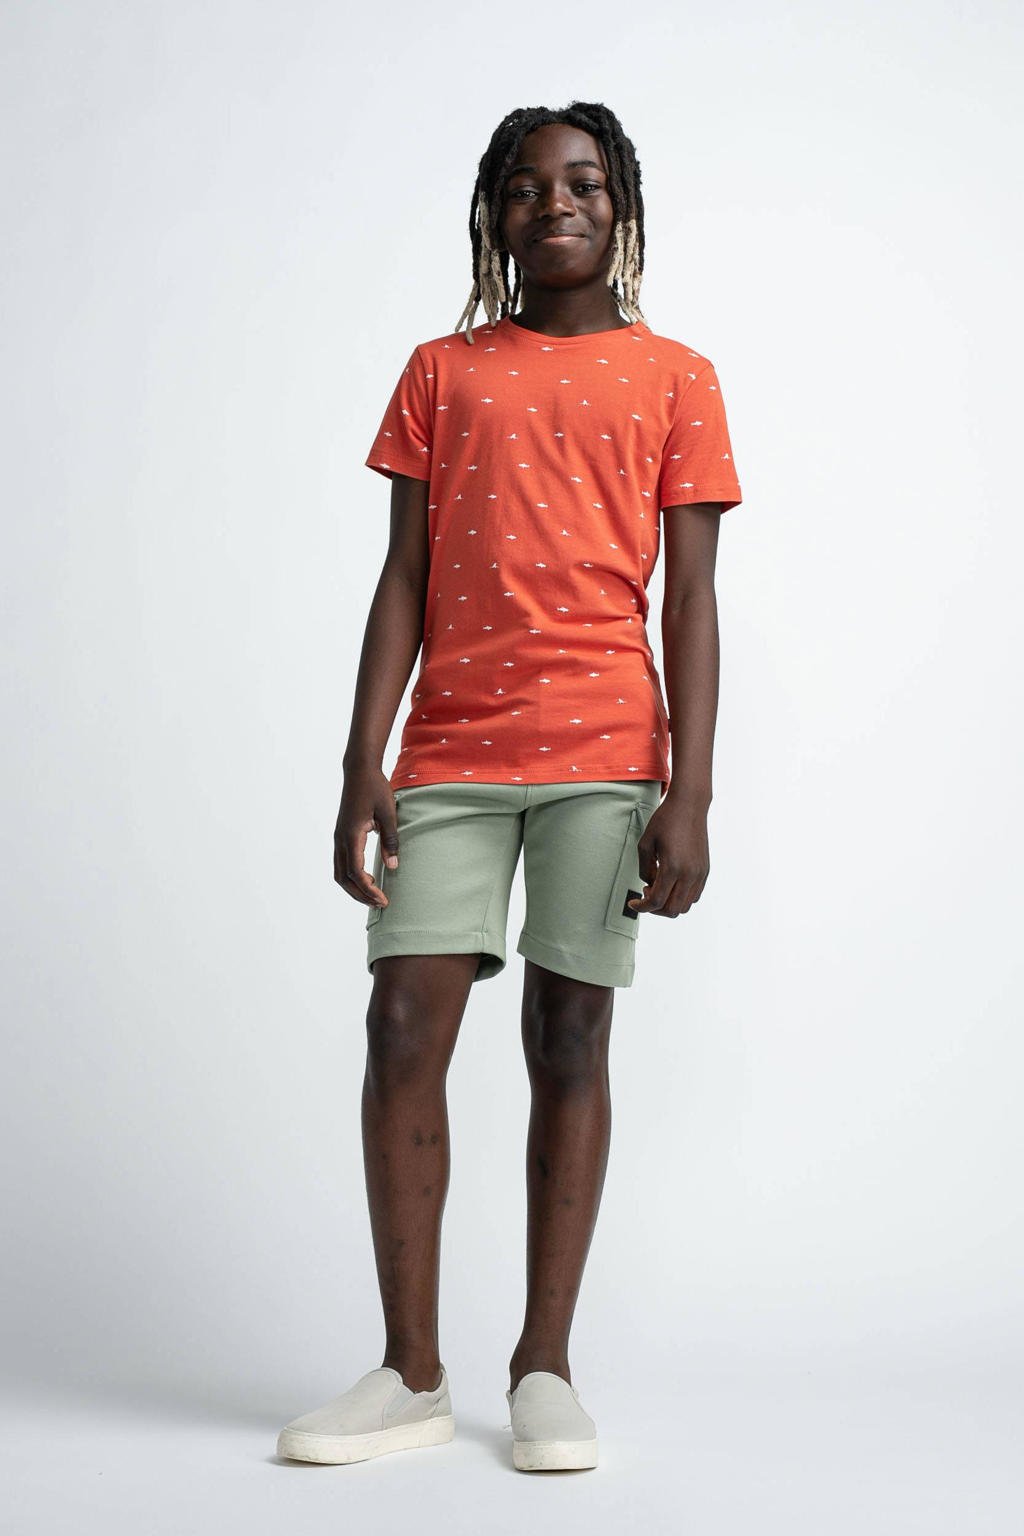 Oranje, rood en witte jongens Petrol Industries T-shirt van stretchkatoen met all over print, korte mouwen en ronde hals